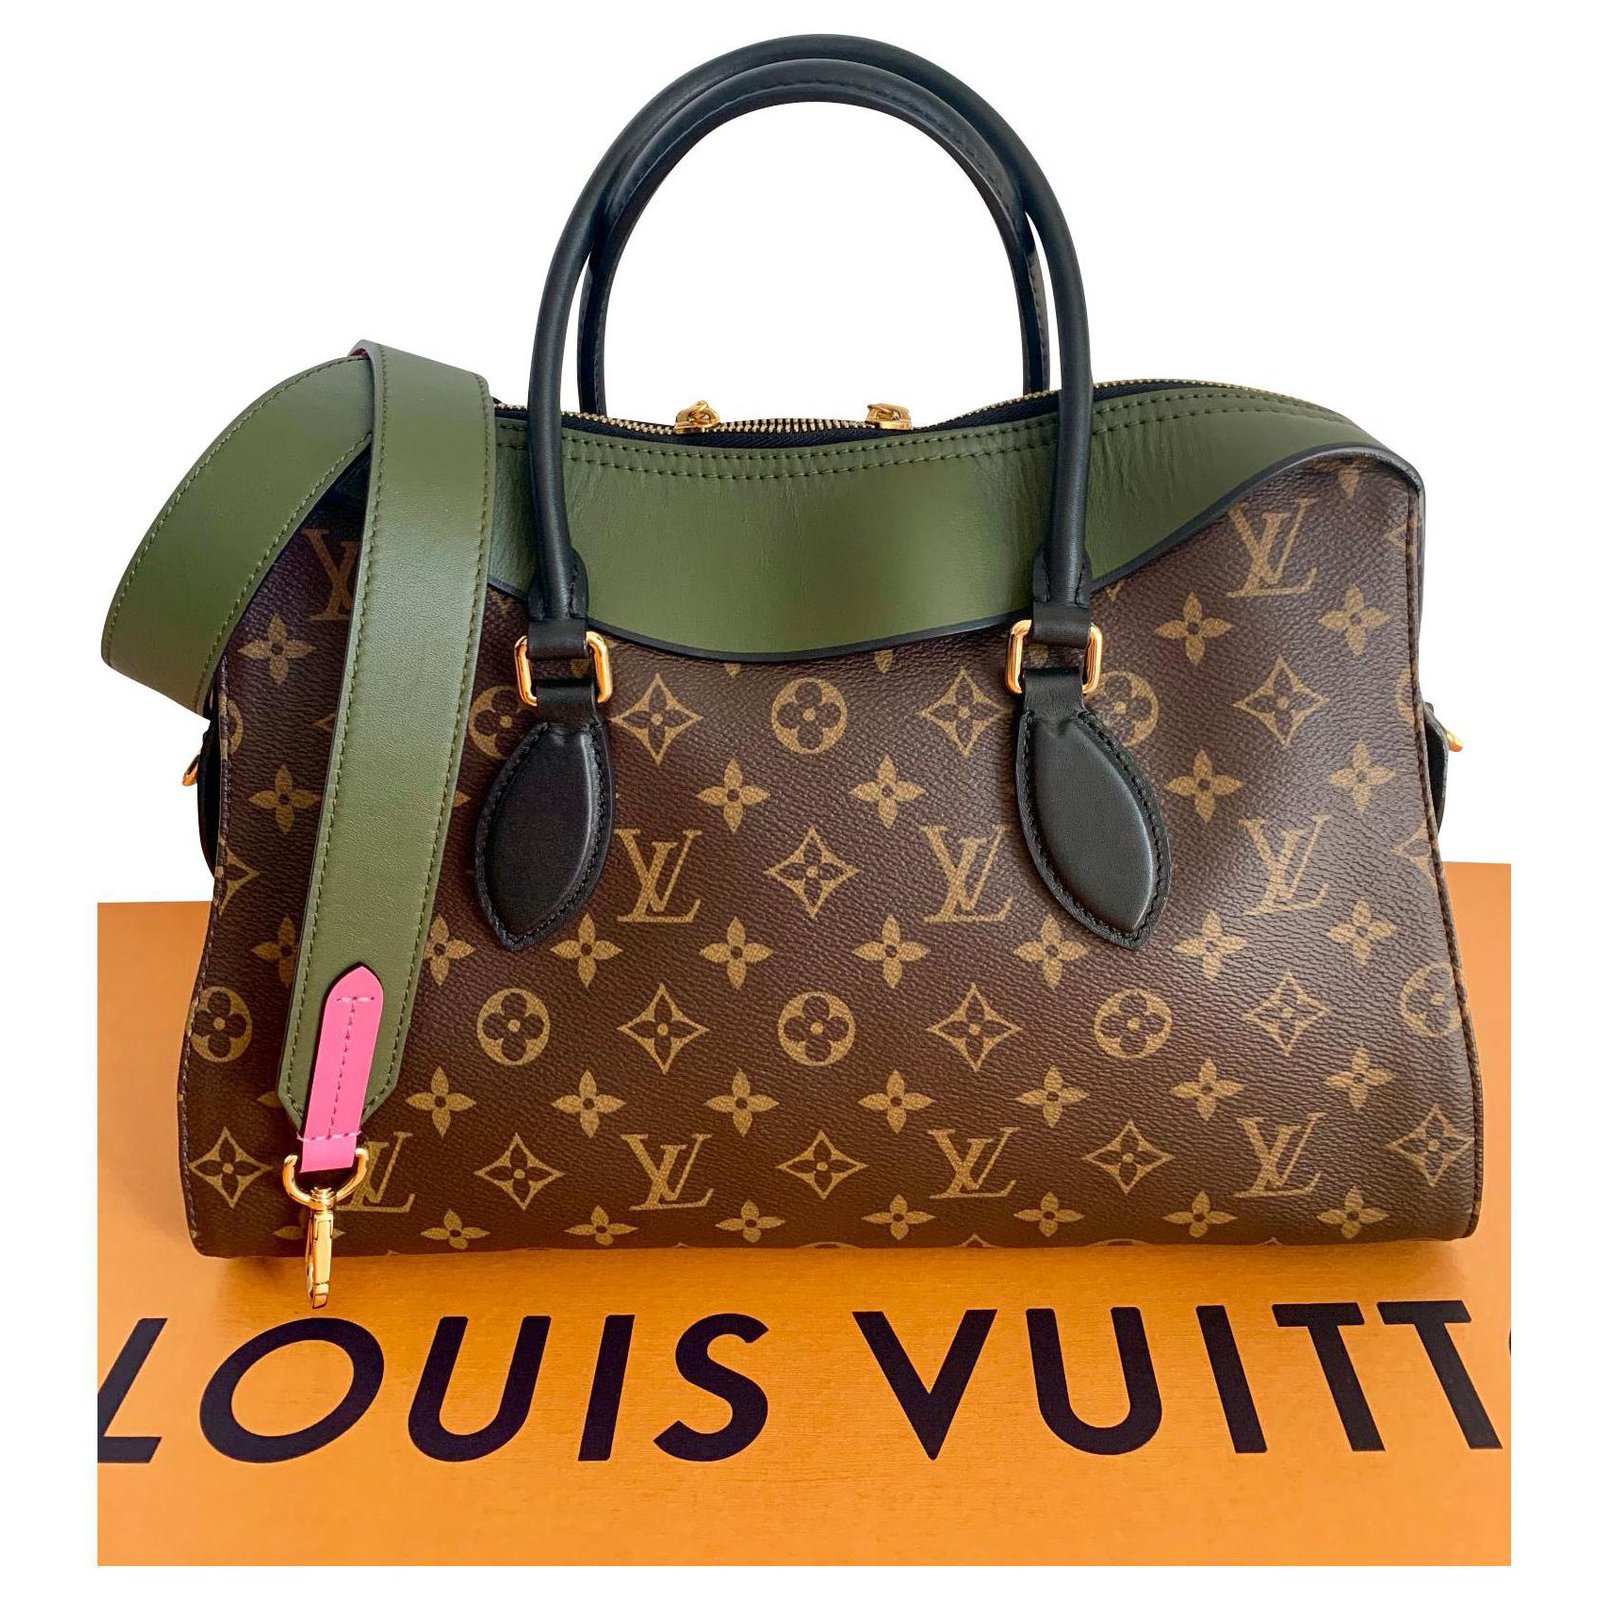 Tuileries Monogram – Keeks Designer Handbags